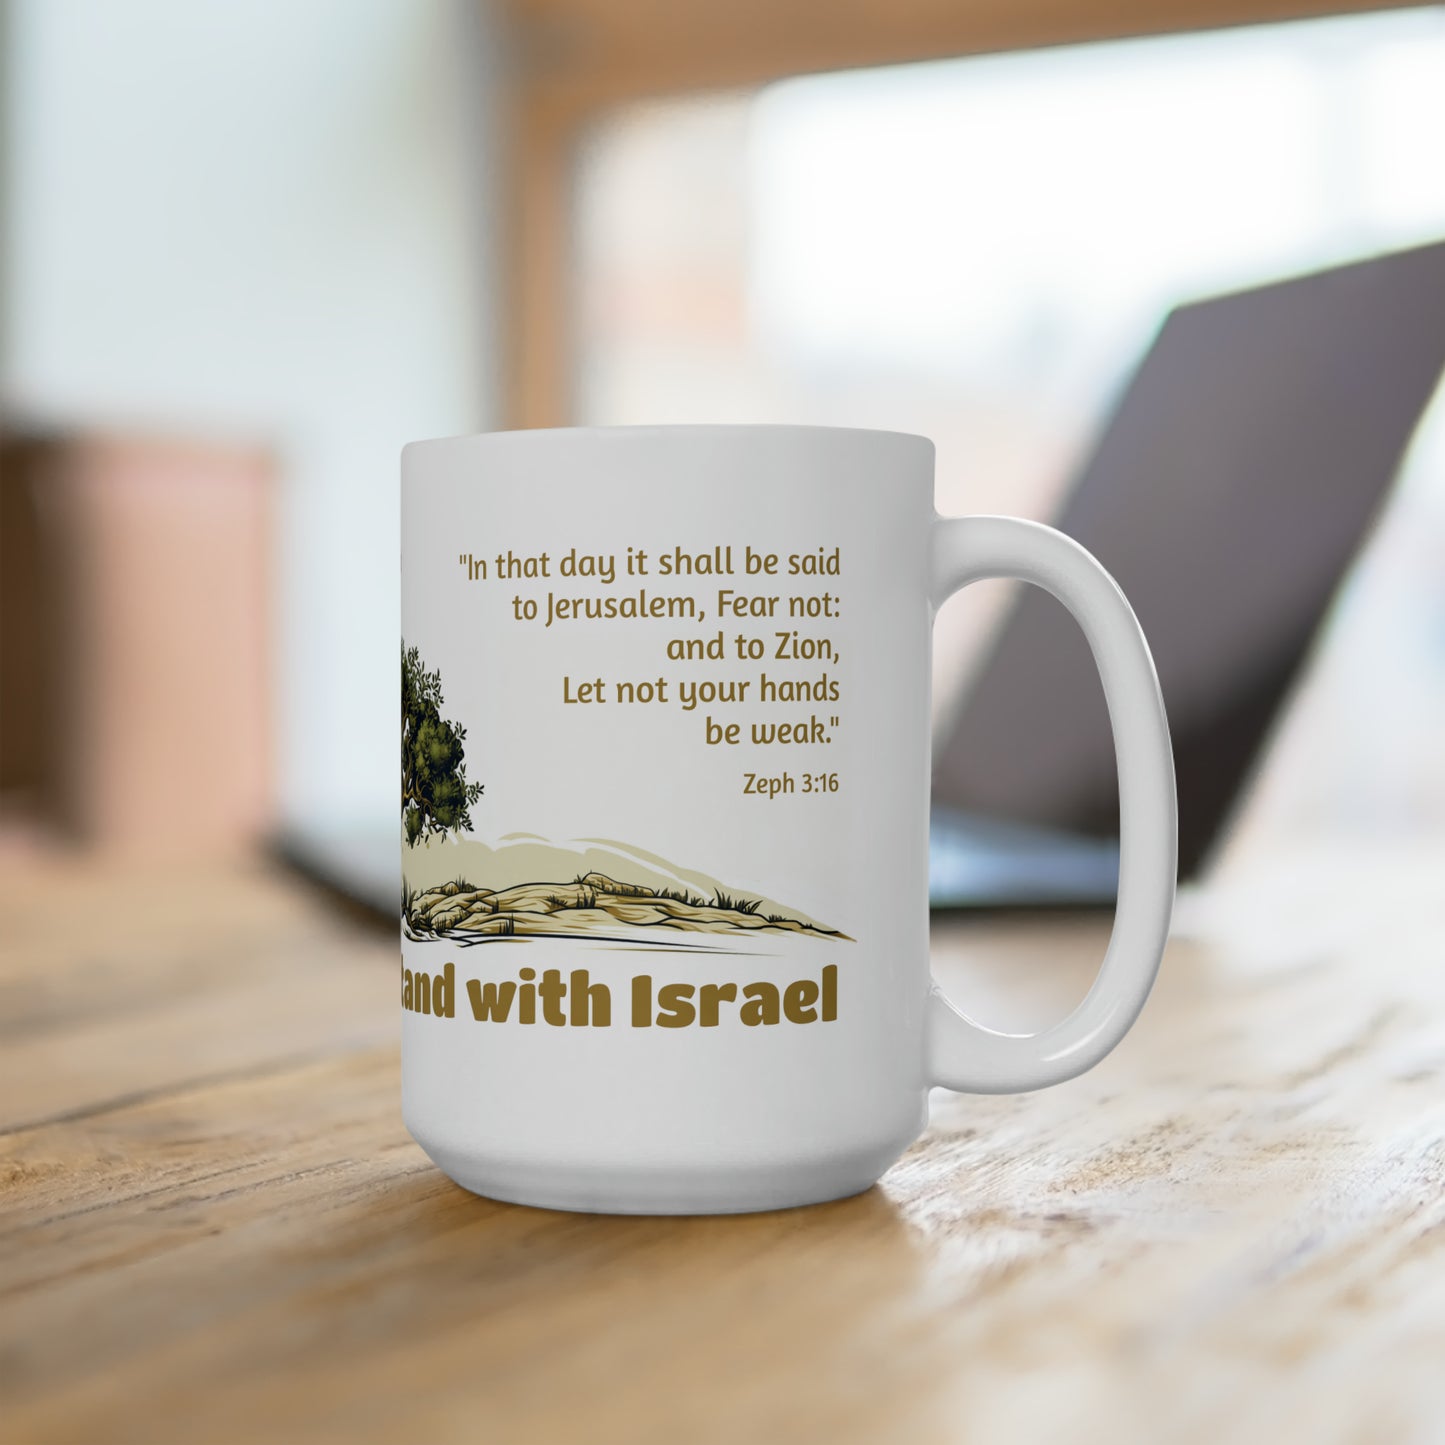 Pray for Israel / Mug 15 oz